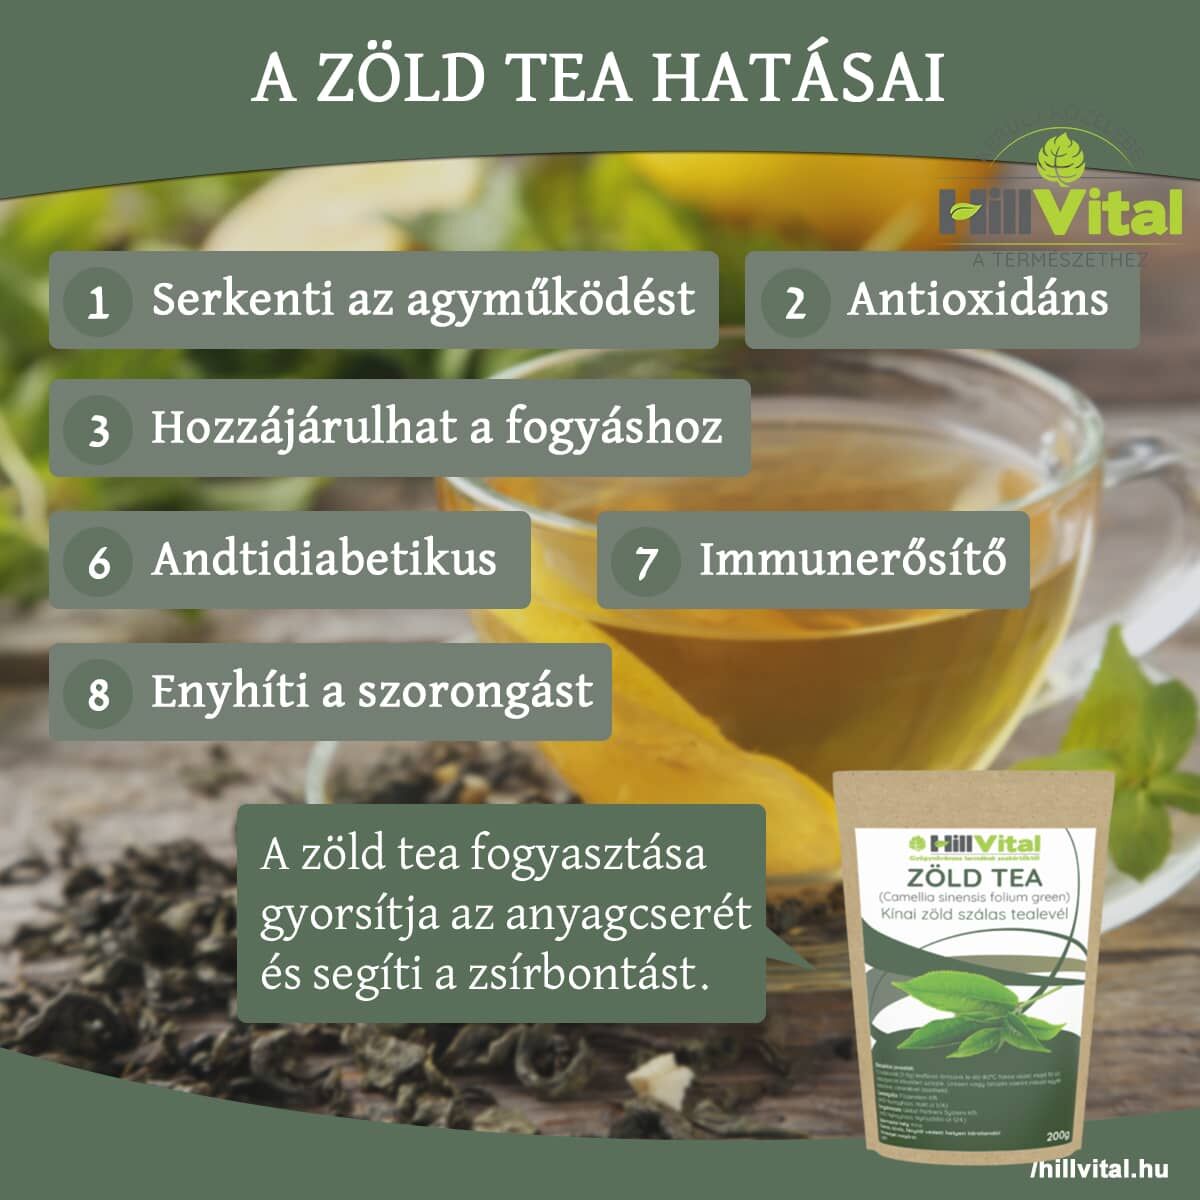 A zöld tea segít az anyagcsere gyorsításban!